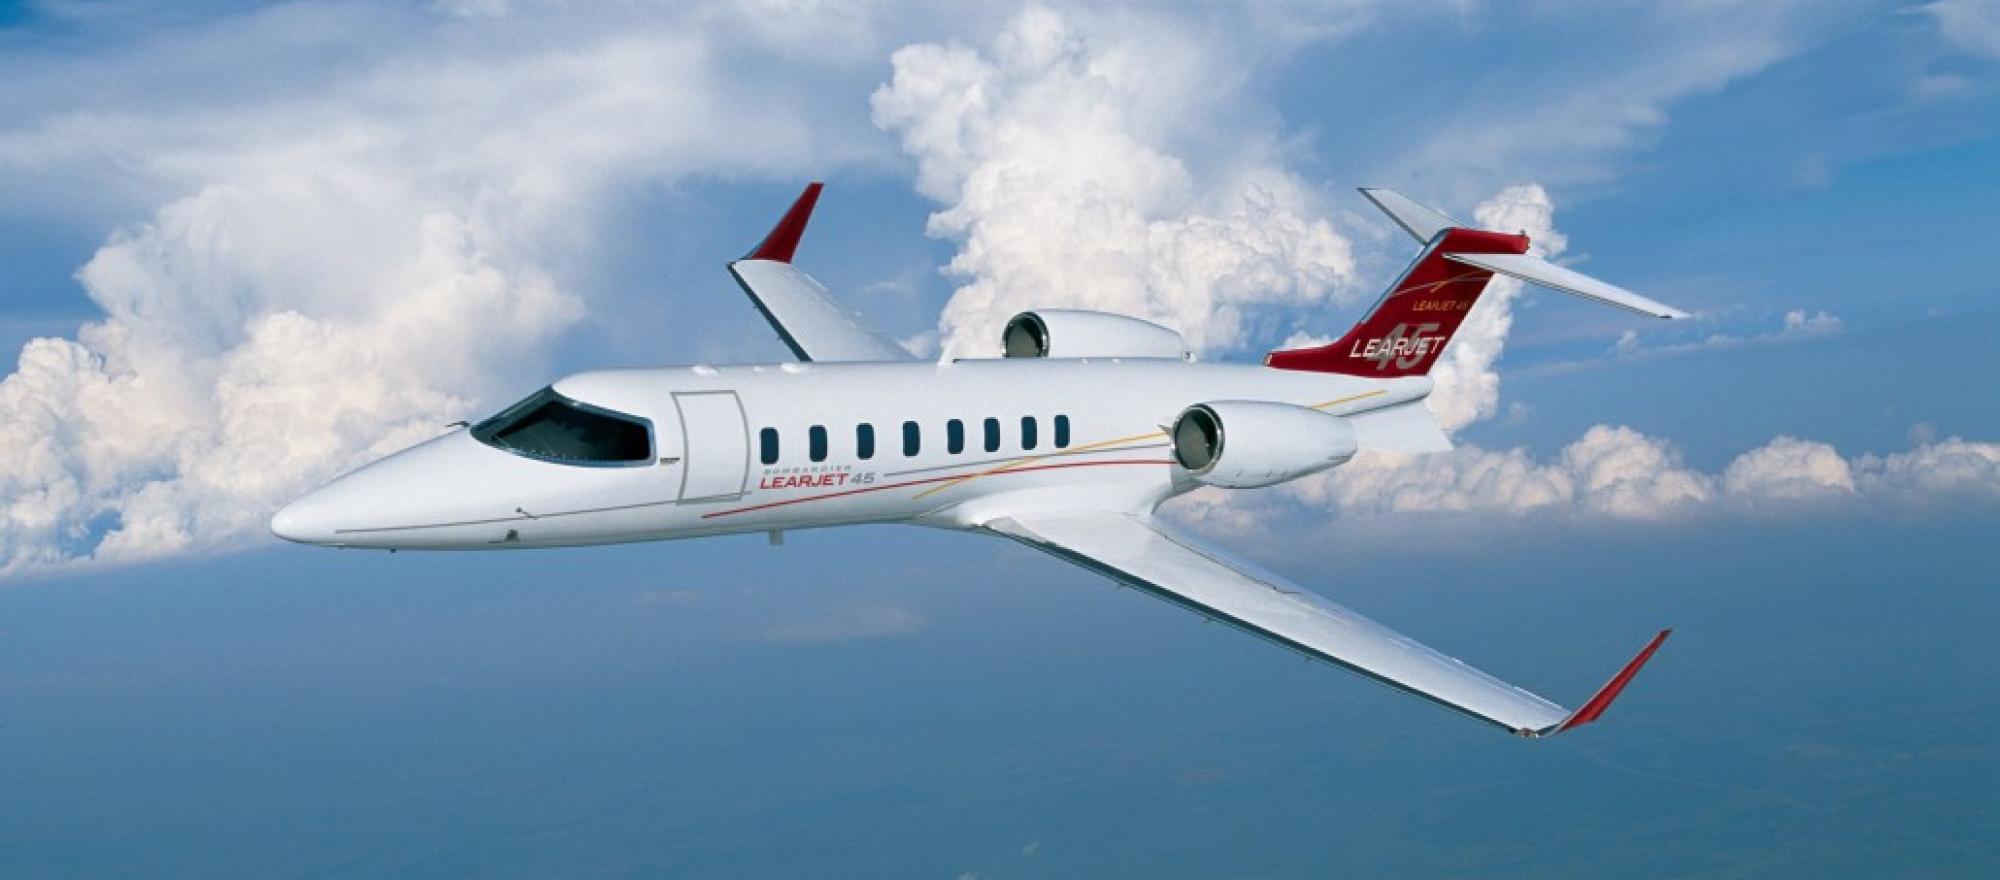 Bombardier Learjet 45 Business Jet Traveler